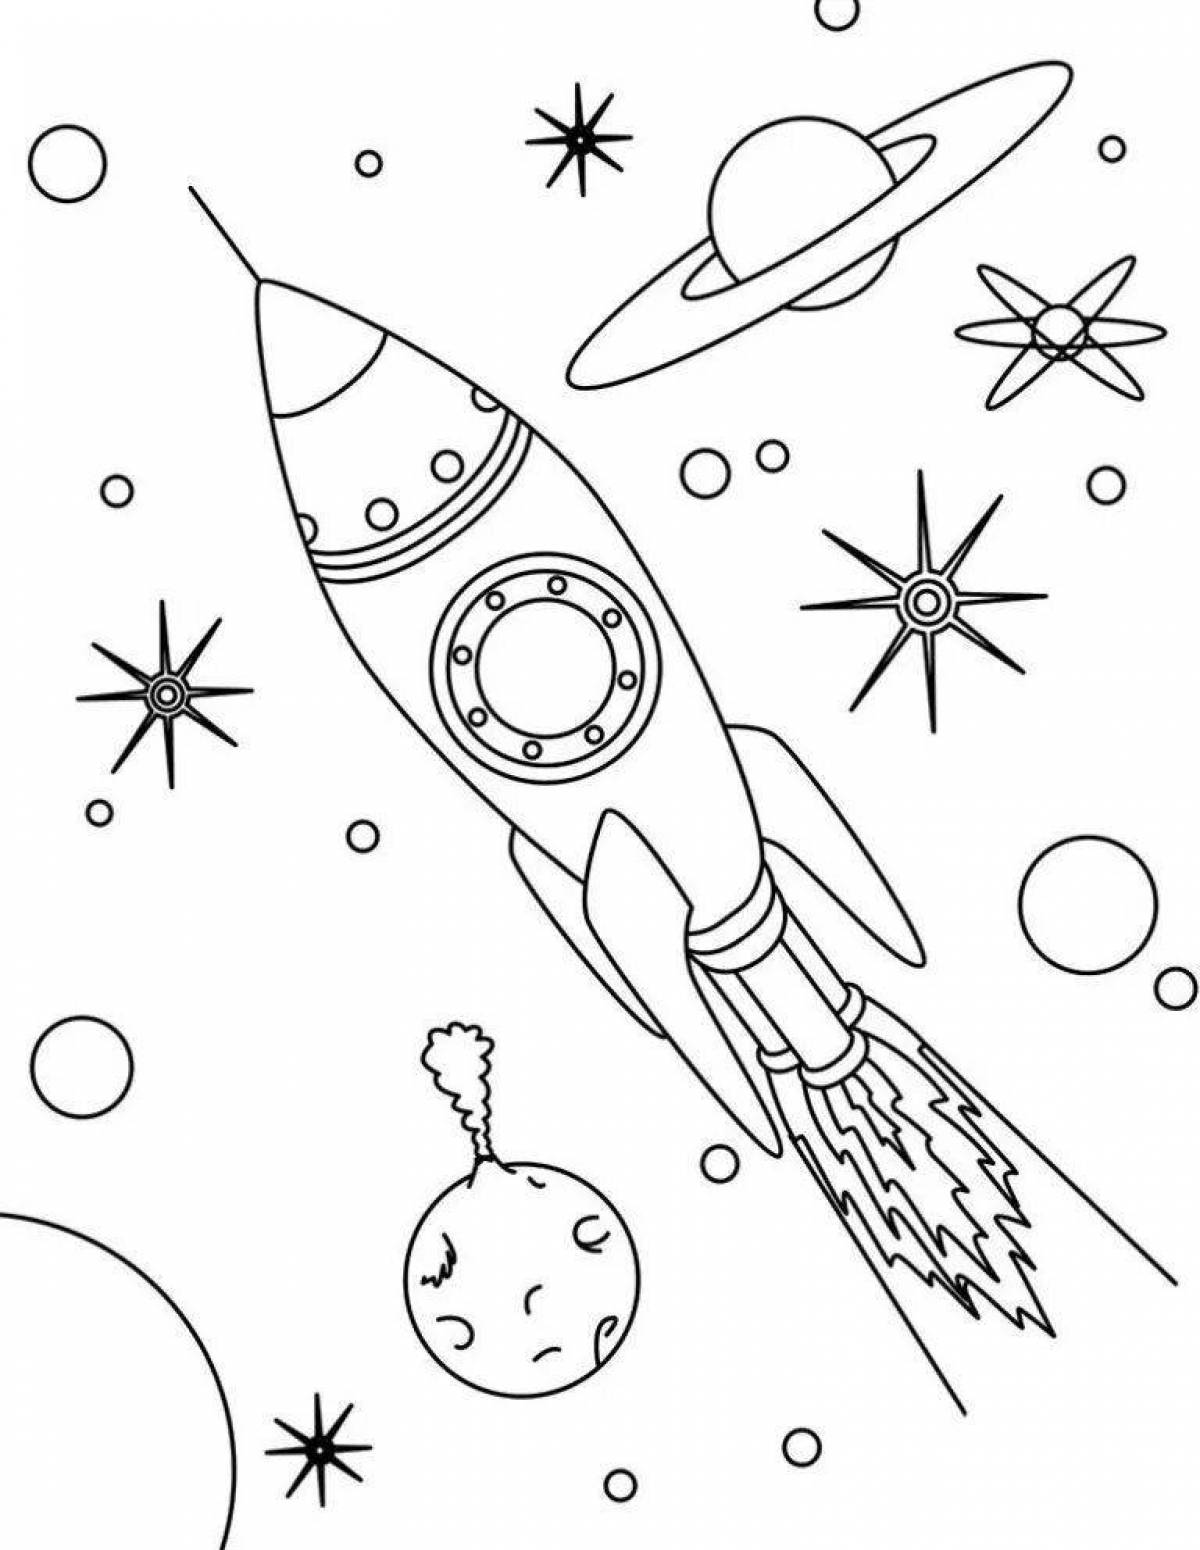 Impressive rocket coloring book for kids